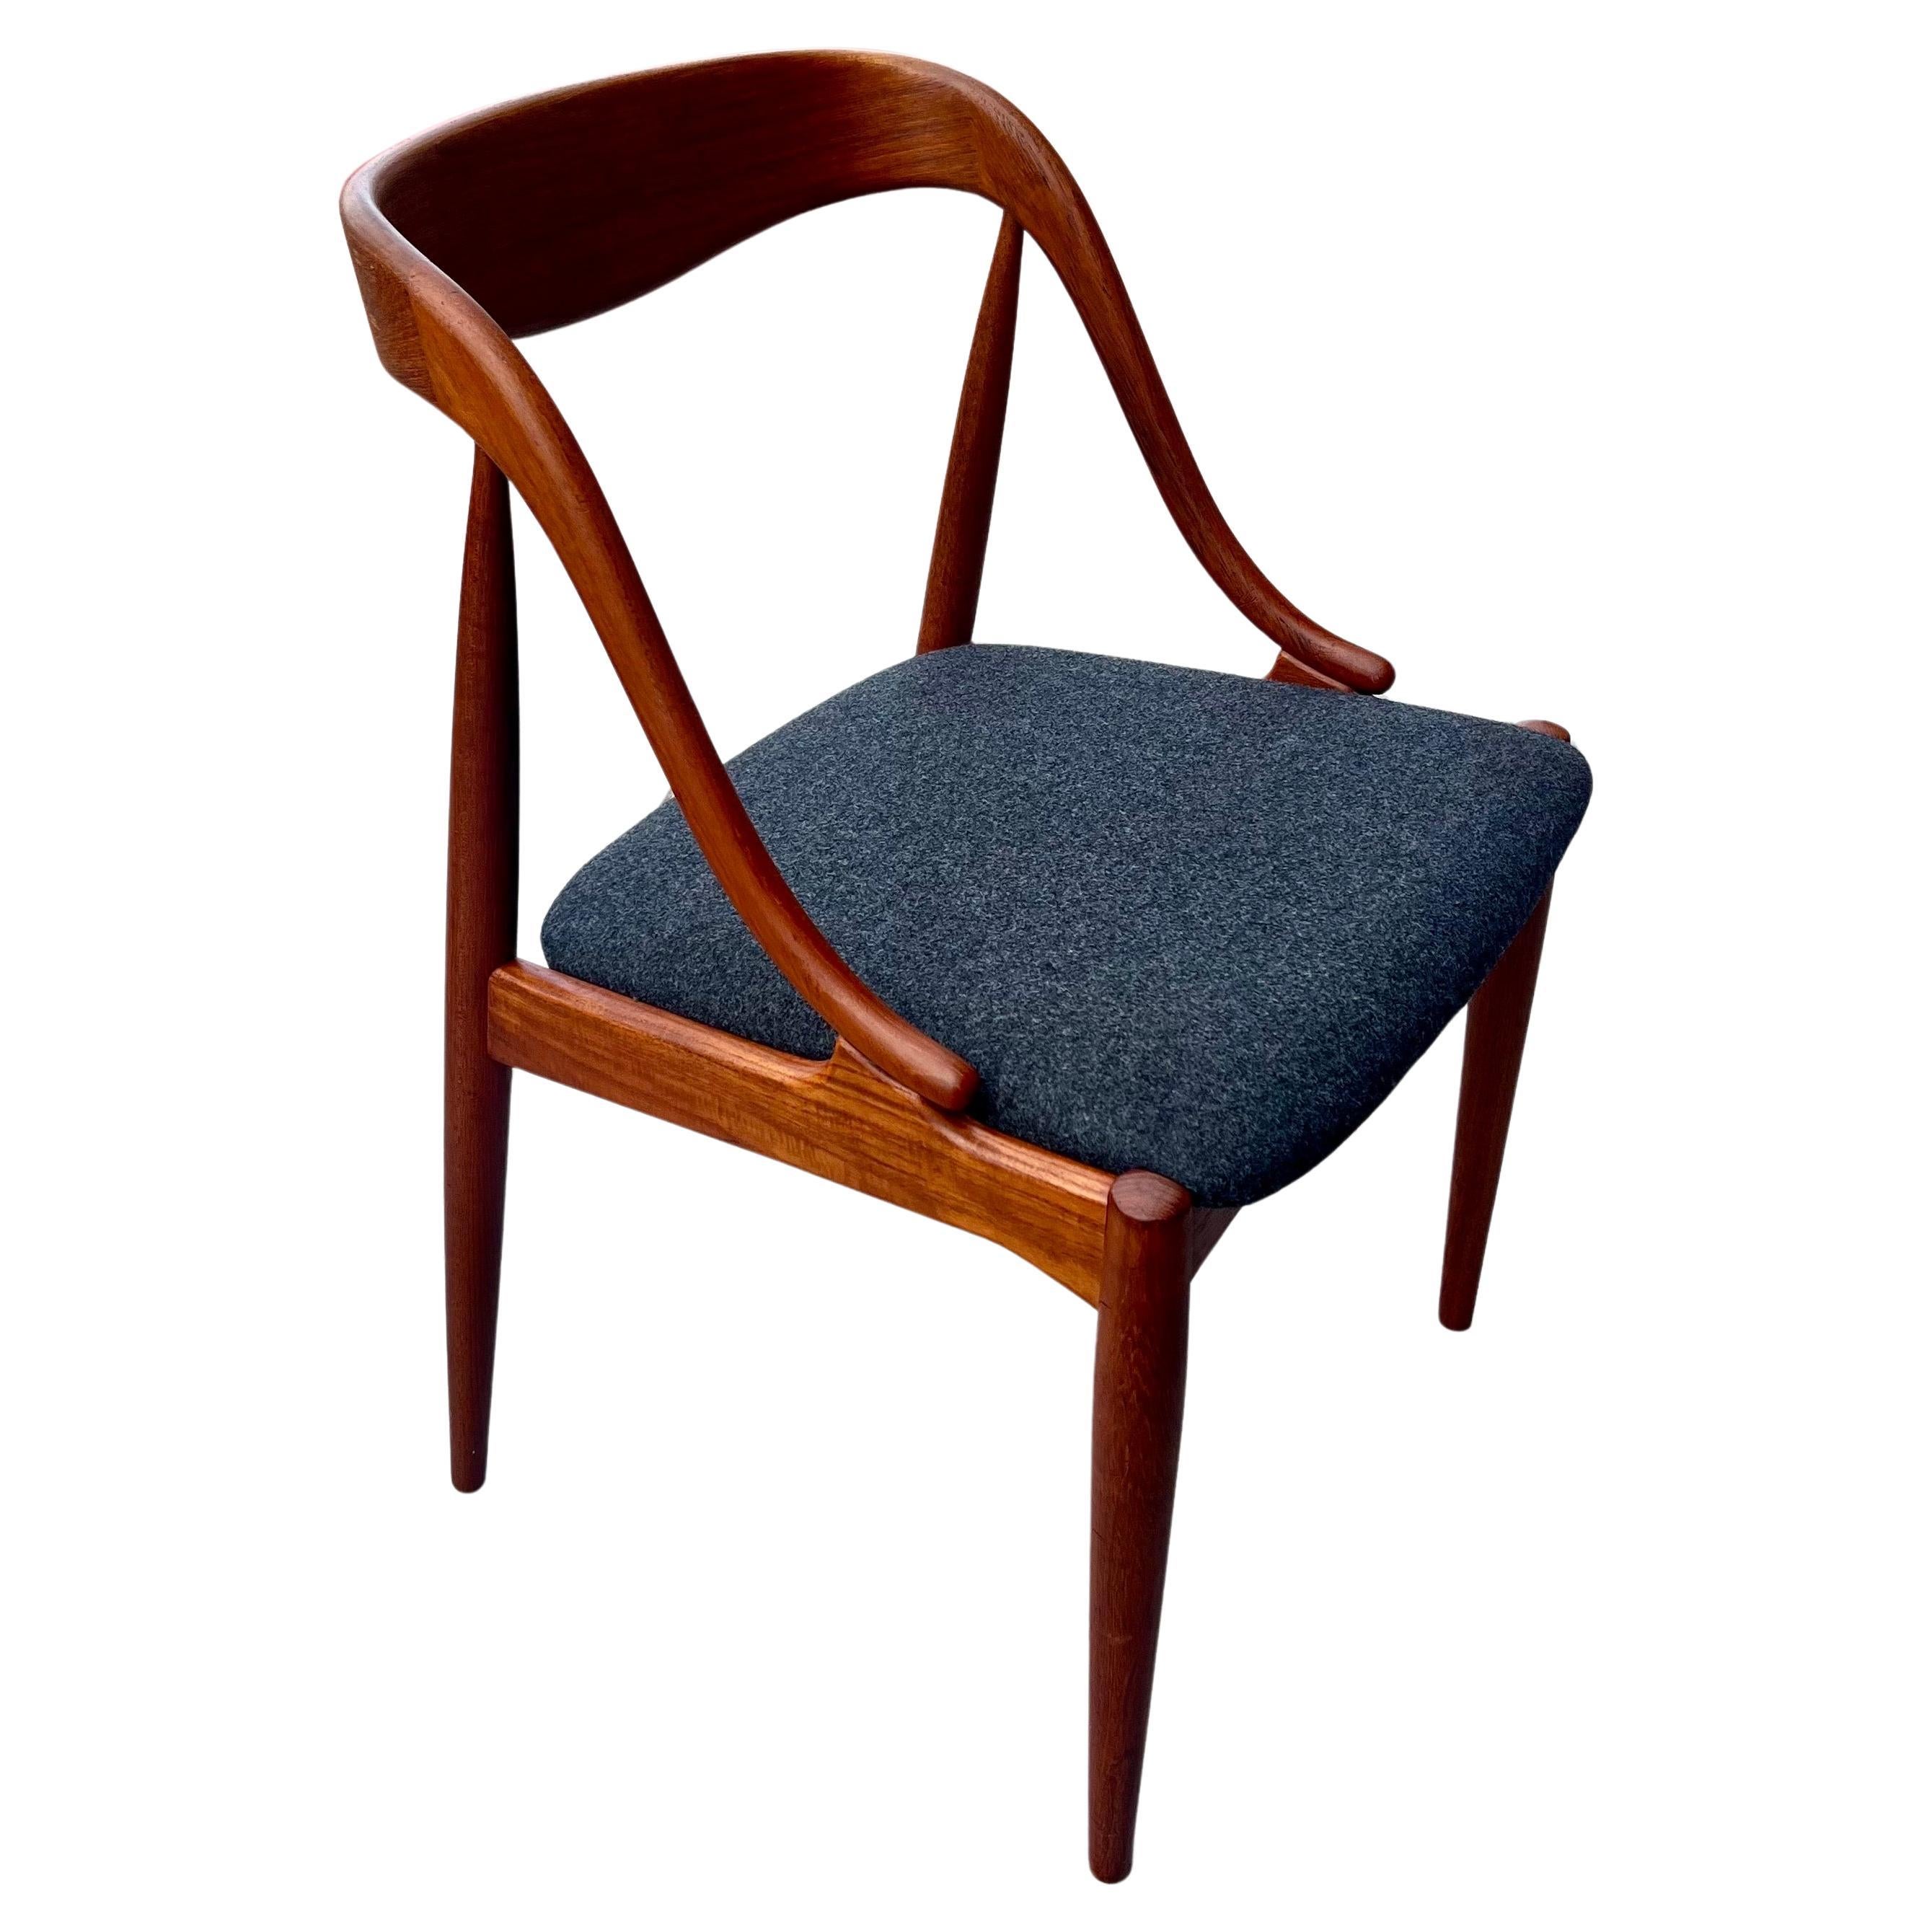 20th Century Danish Modern teak Model 16 Chair by Johannes Andersen for Uldum Mobler